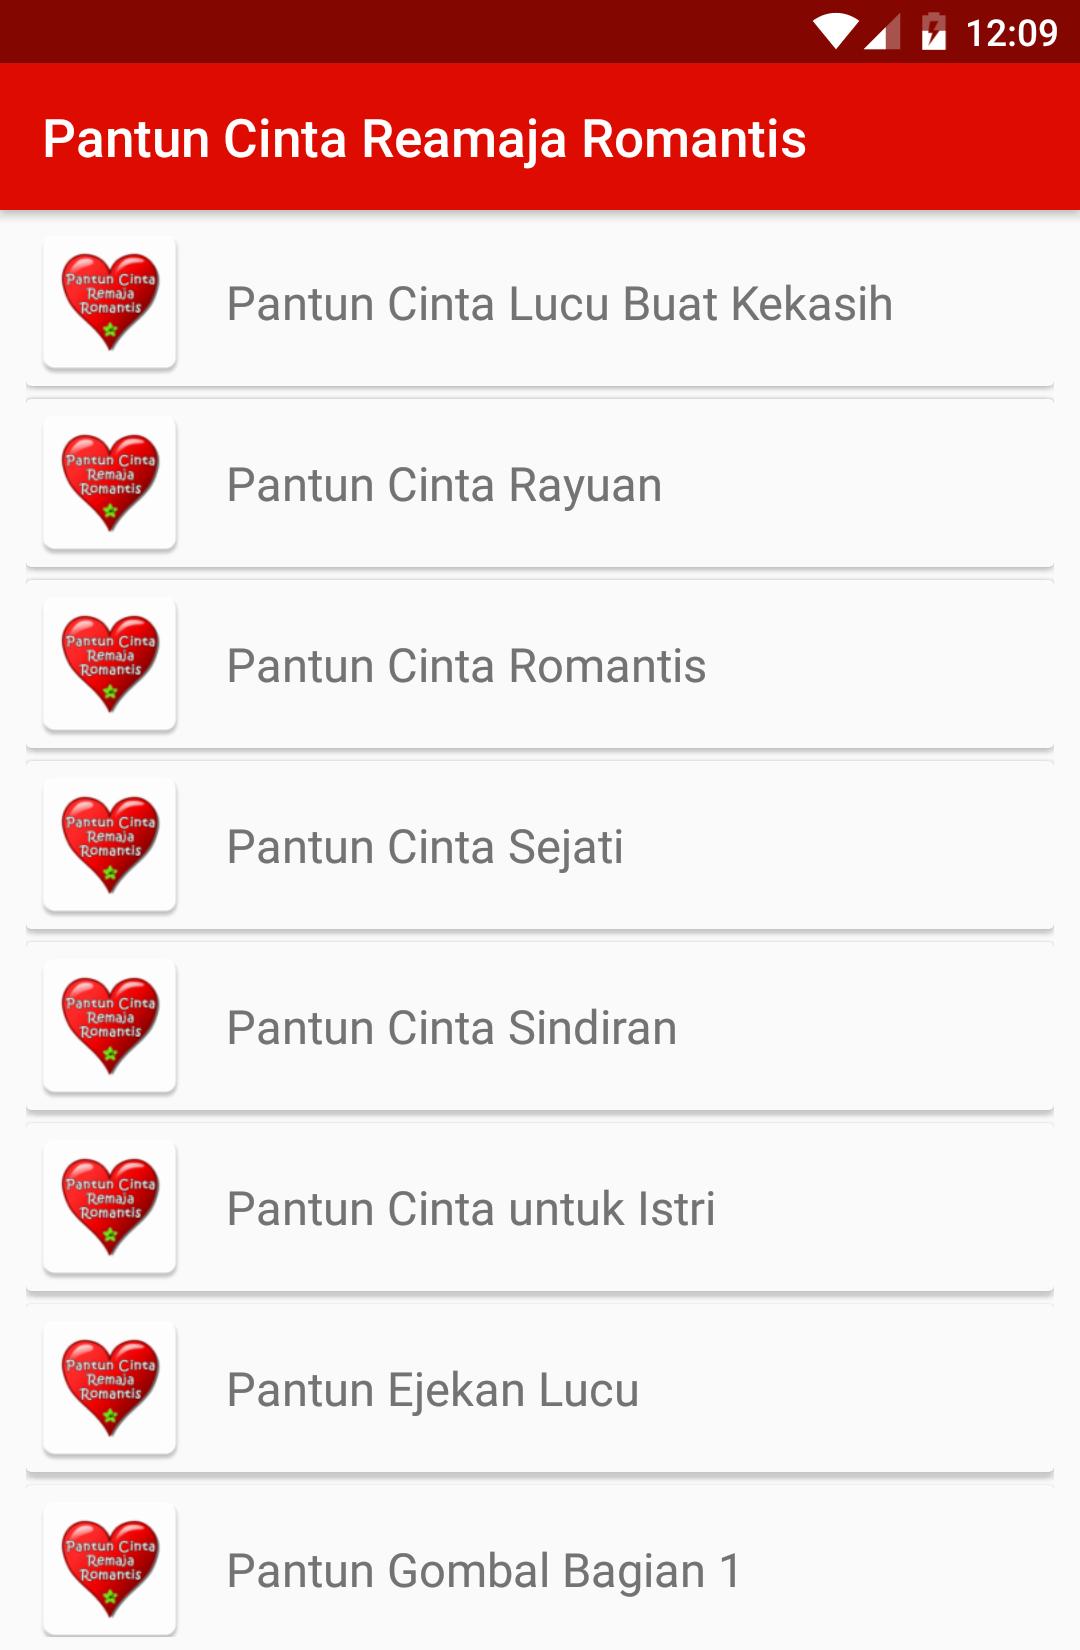 Pantun Cinta Remaja Romantis For Android Apk Download